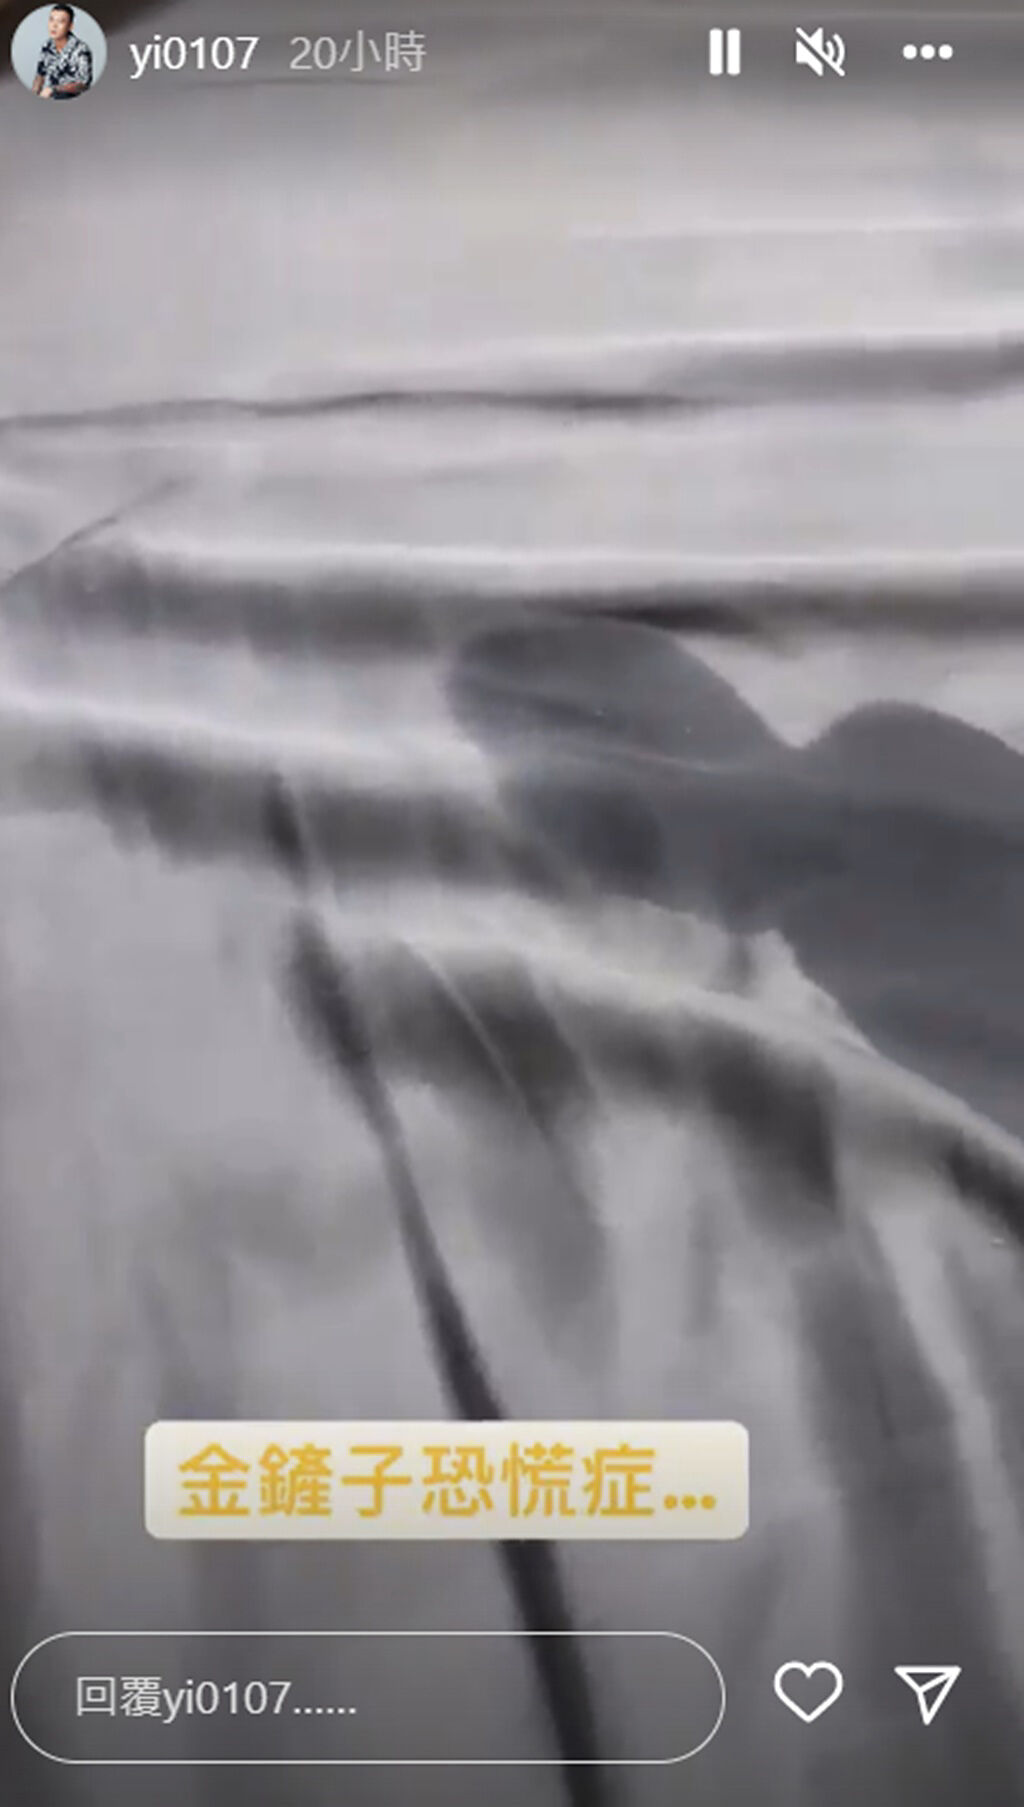 鳳梨曬出床鋪一片濕的影片，引發網友無限遐想。(yi0107 IG)